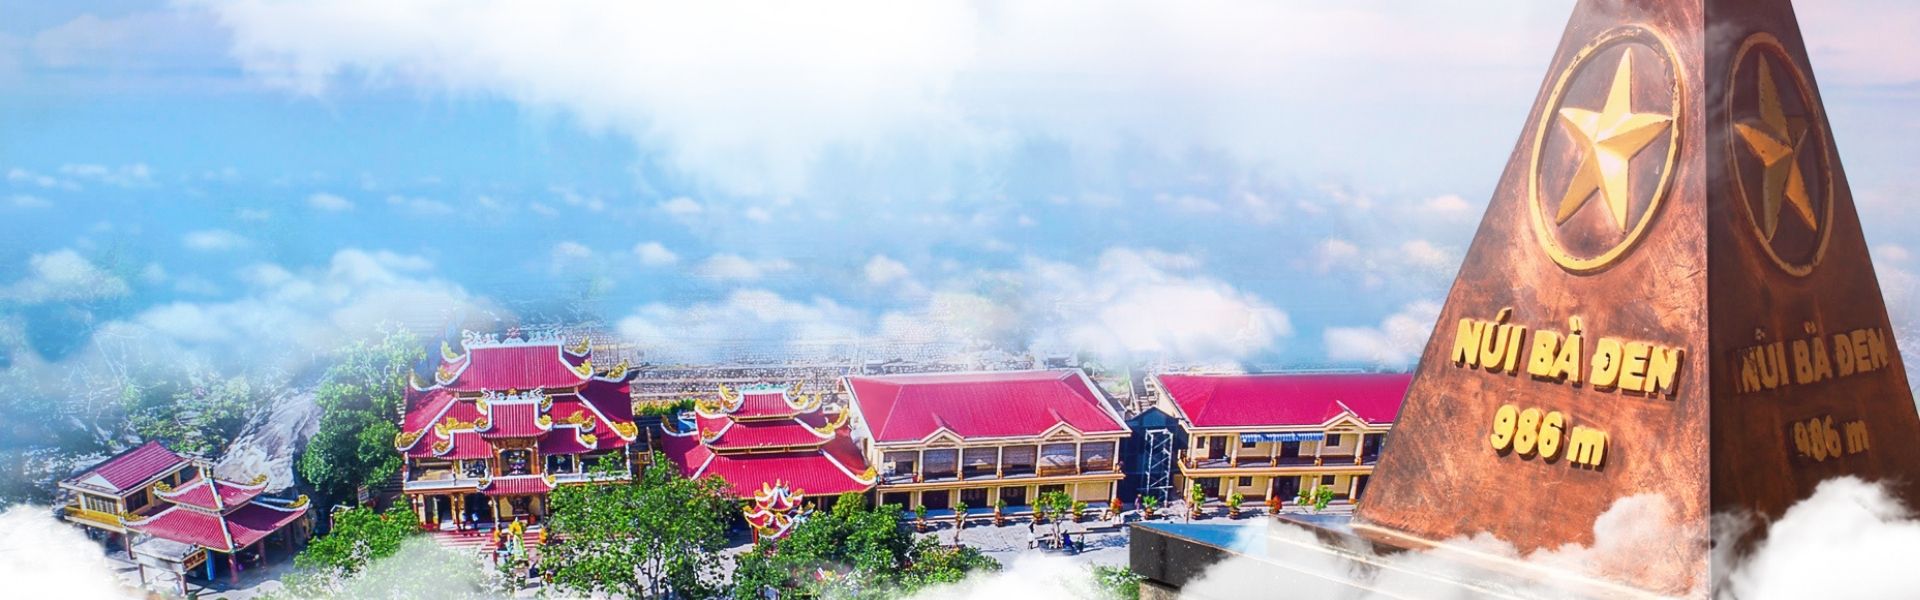 Du lịch Tây Ninh trọn vẹn với những địa điểm check in cực đẹp